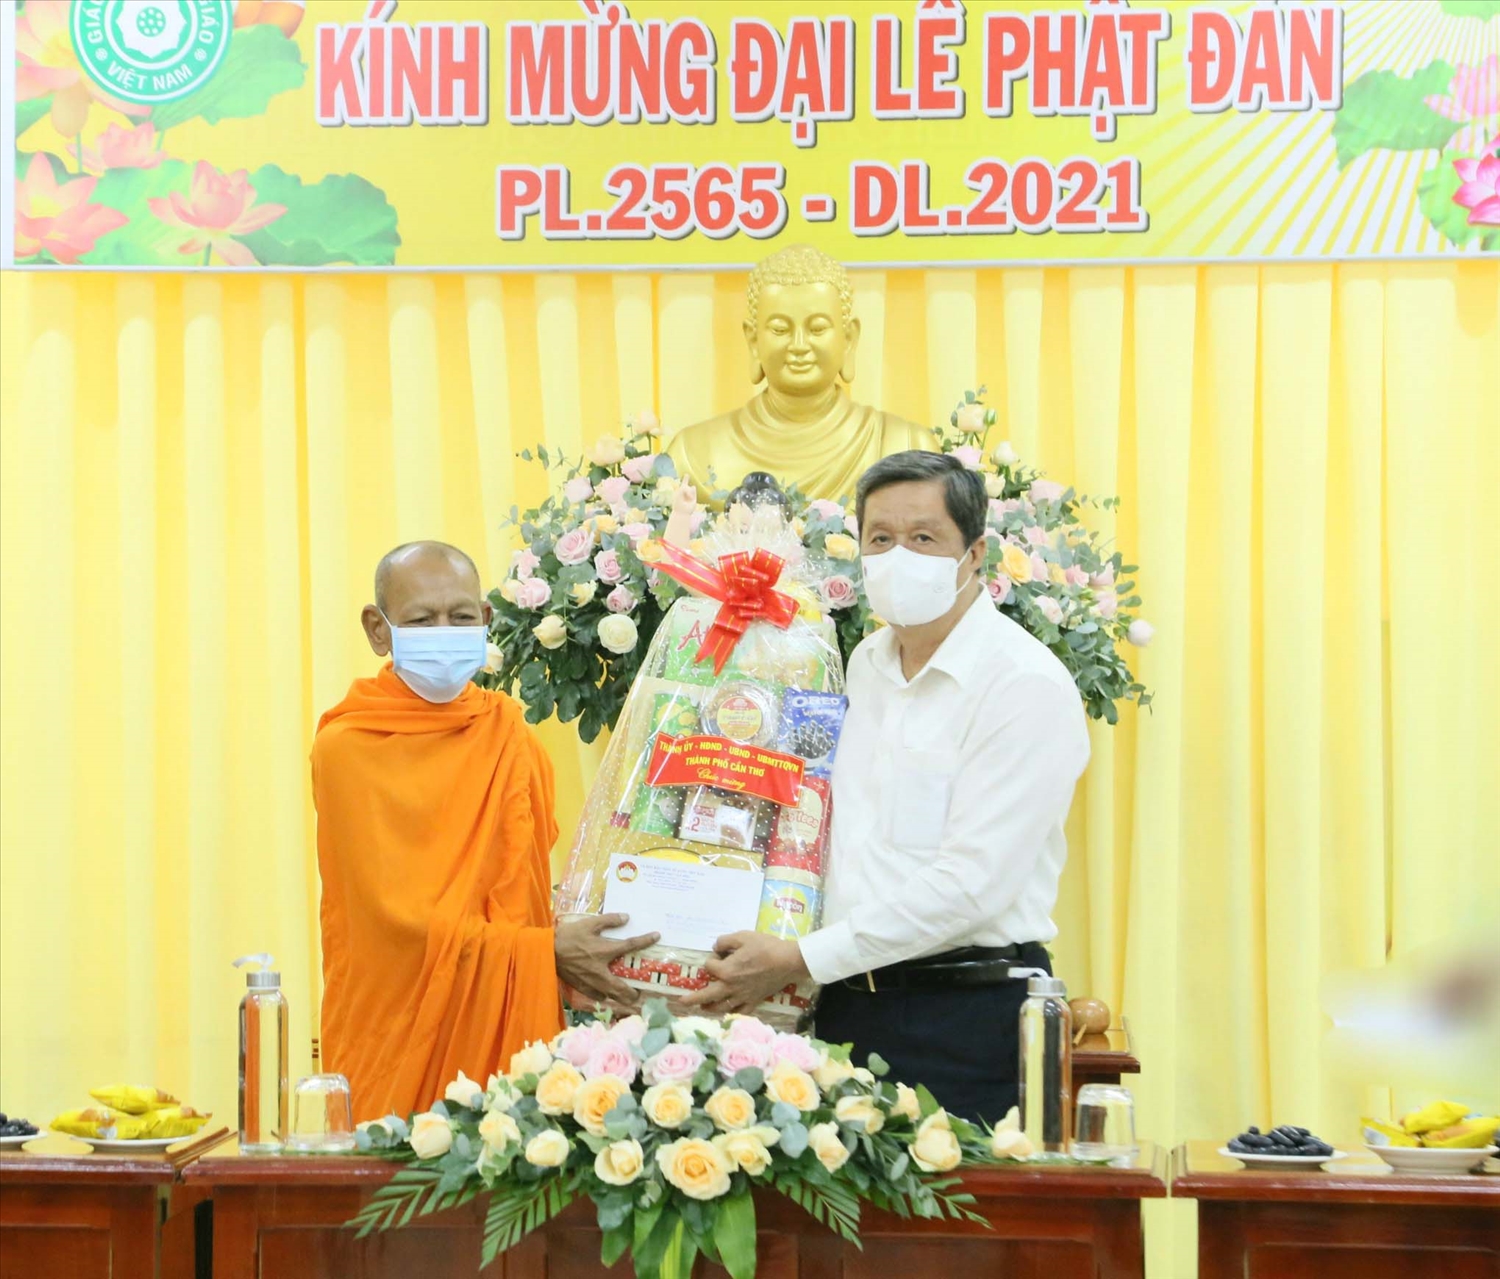 Ông Phạm Văn Hiểu, Phó Bí thư Thành ủy, Chủ tịch HĐND TP. Cần Thơ thăm và tặng quà tại Ban Trị sự Giáo hội Phật giáo TP. Cần Thơ